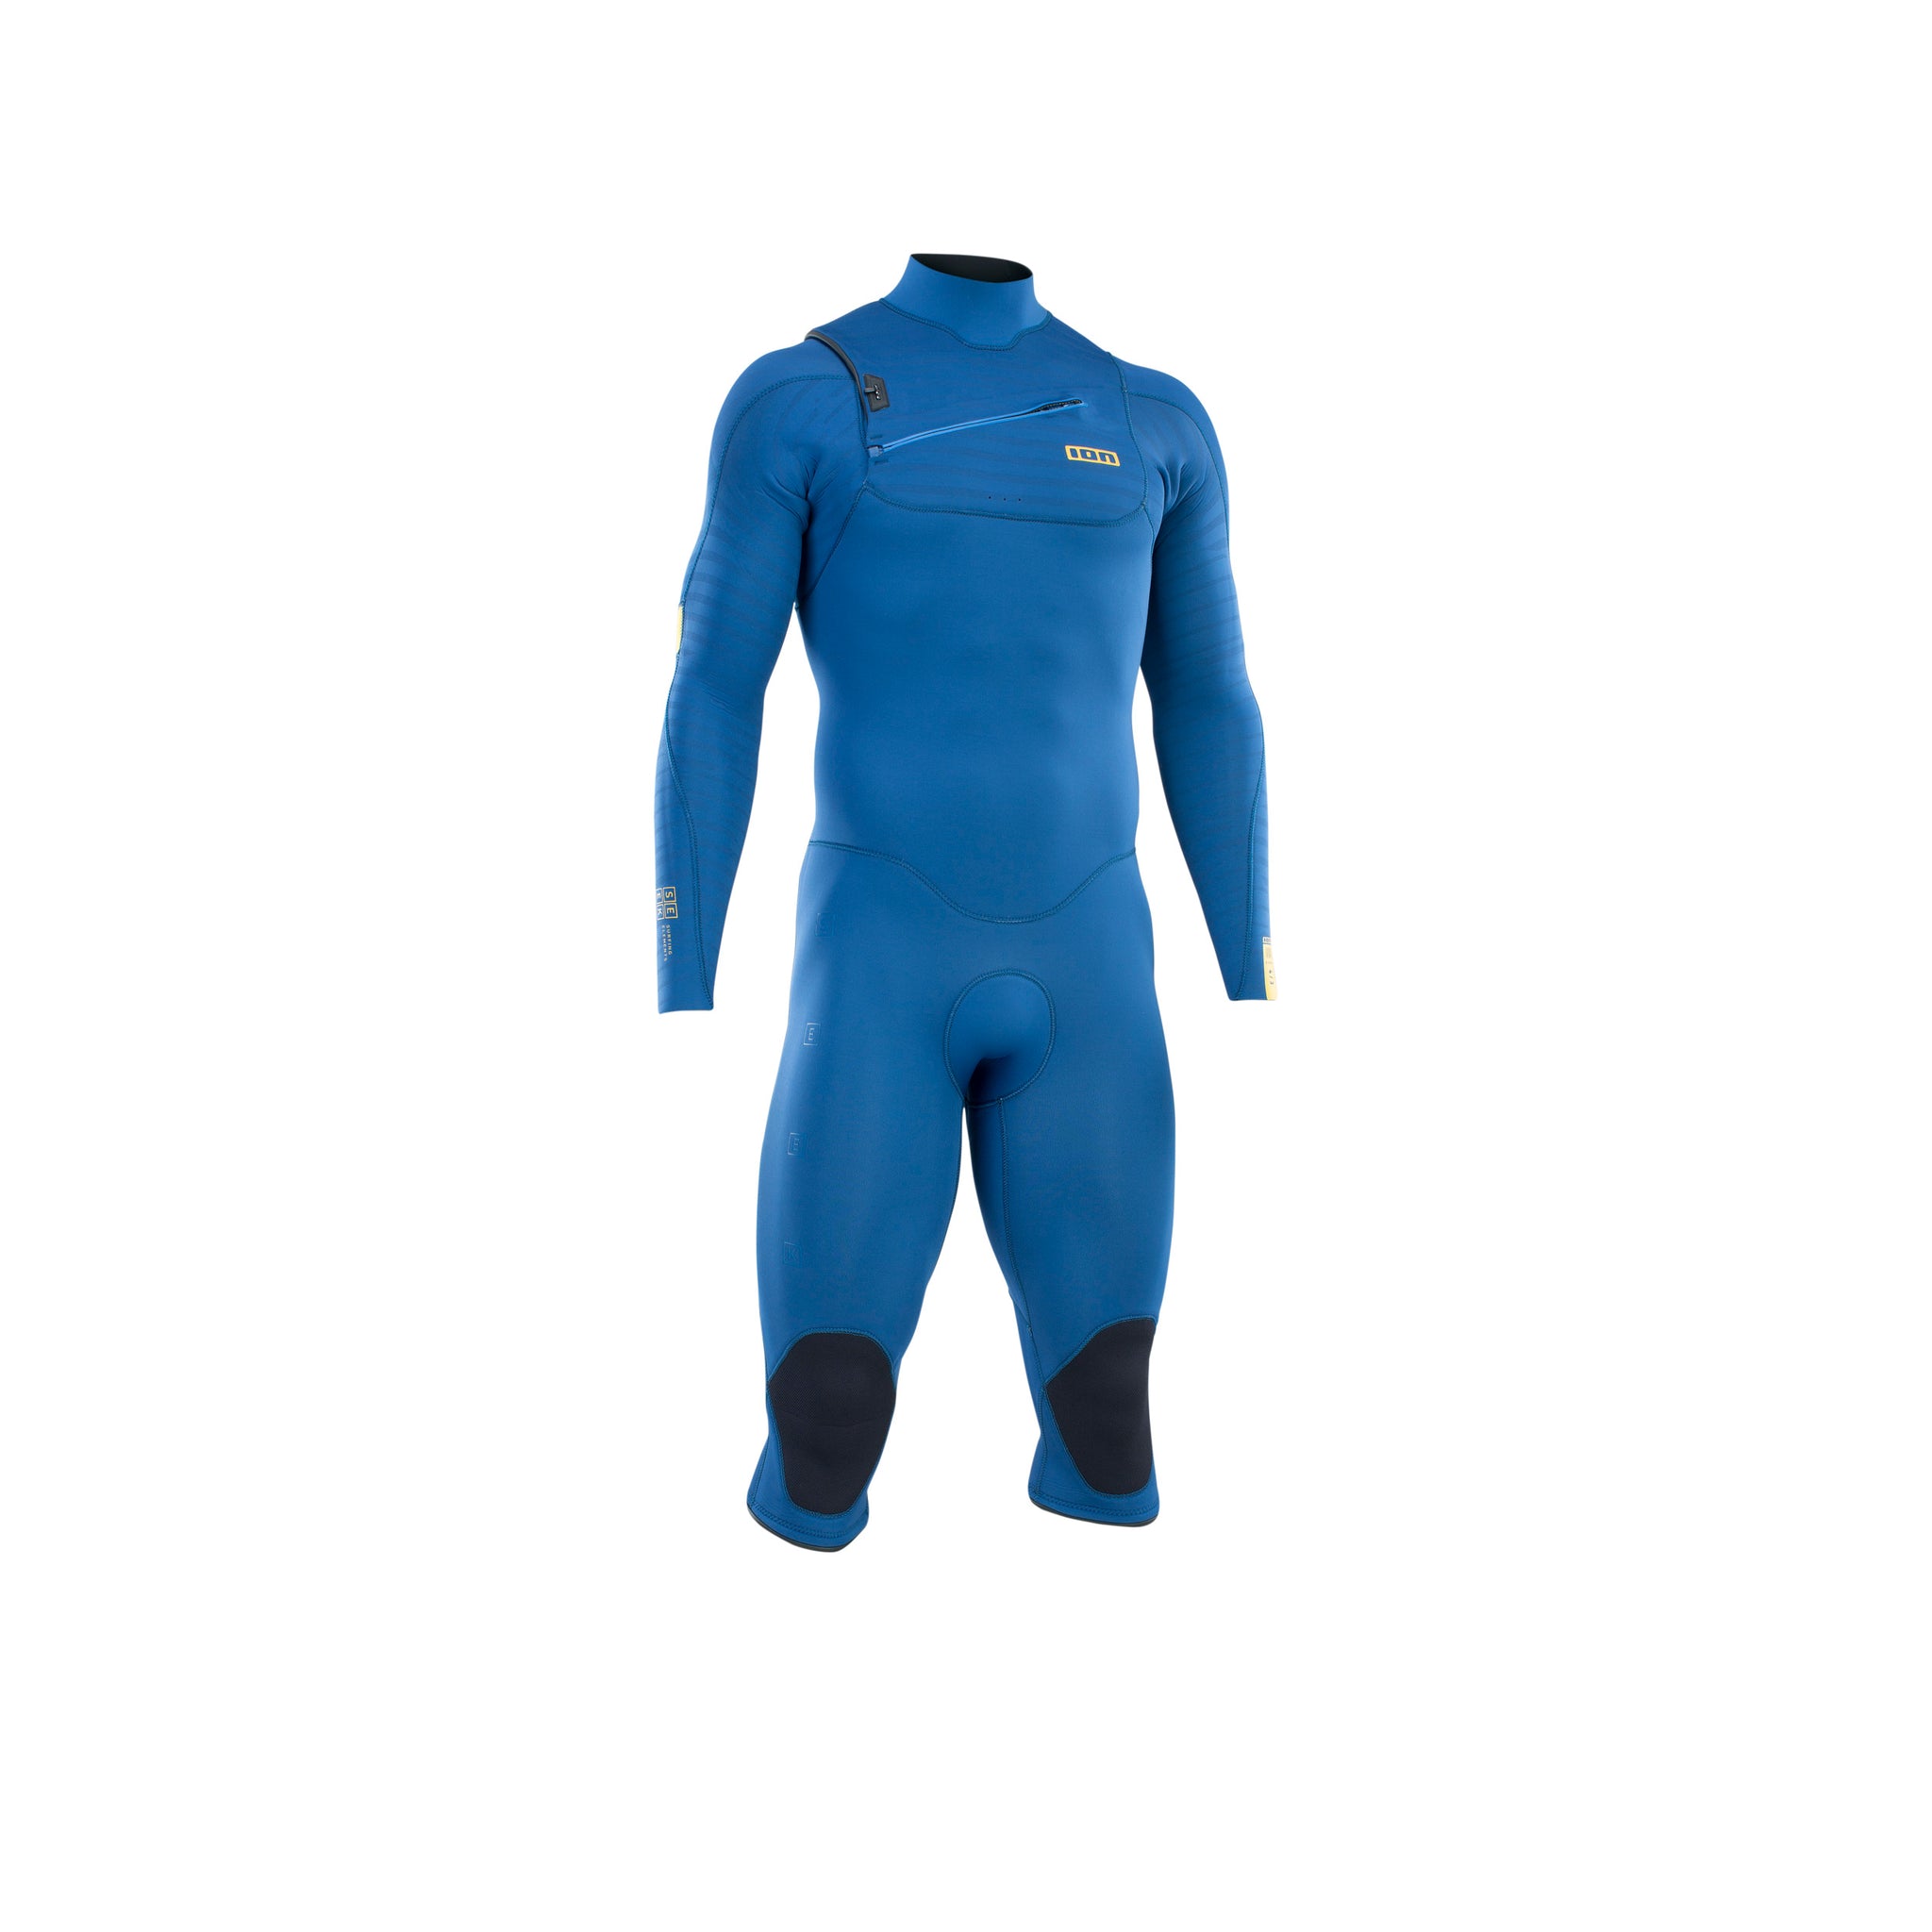 ION Wetsuit Seek Core 4/3 Overknee LS Front Zip men